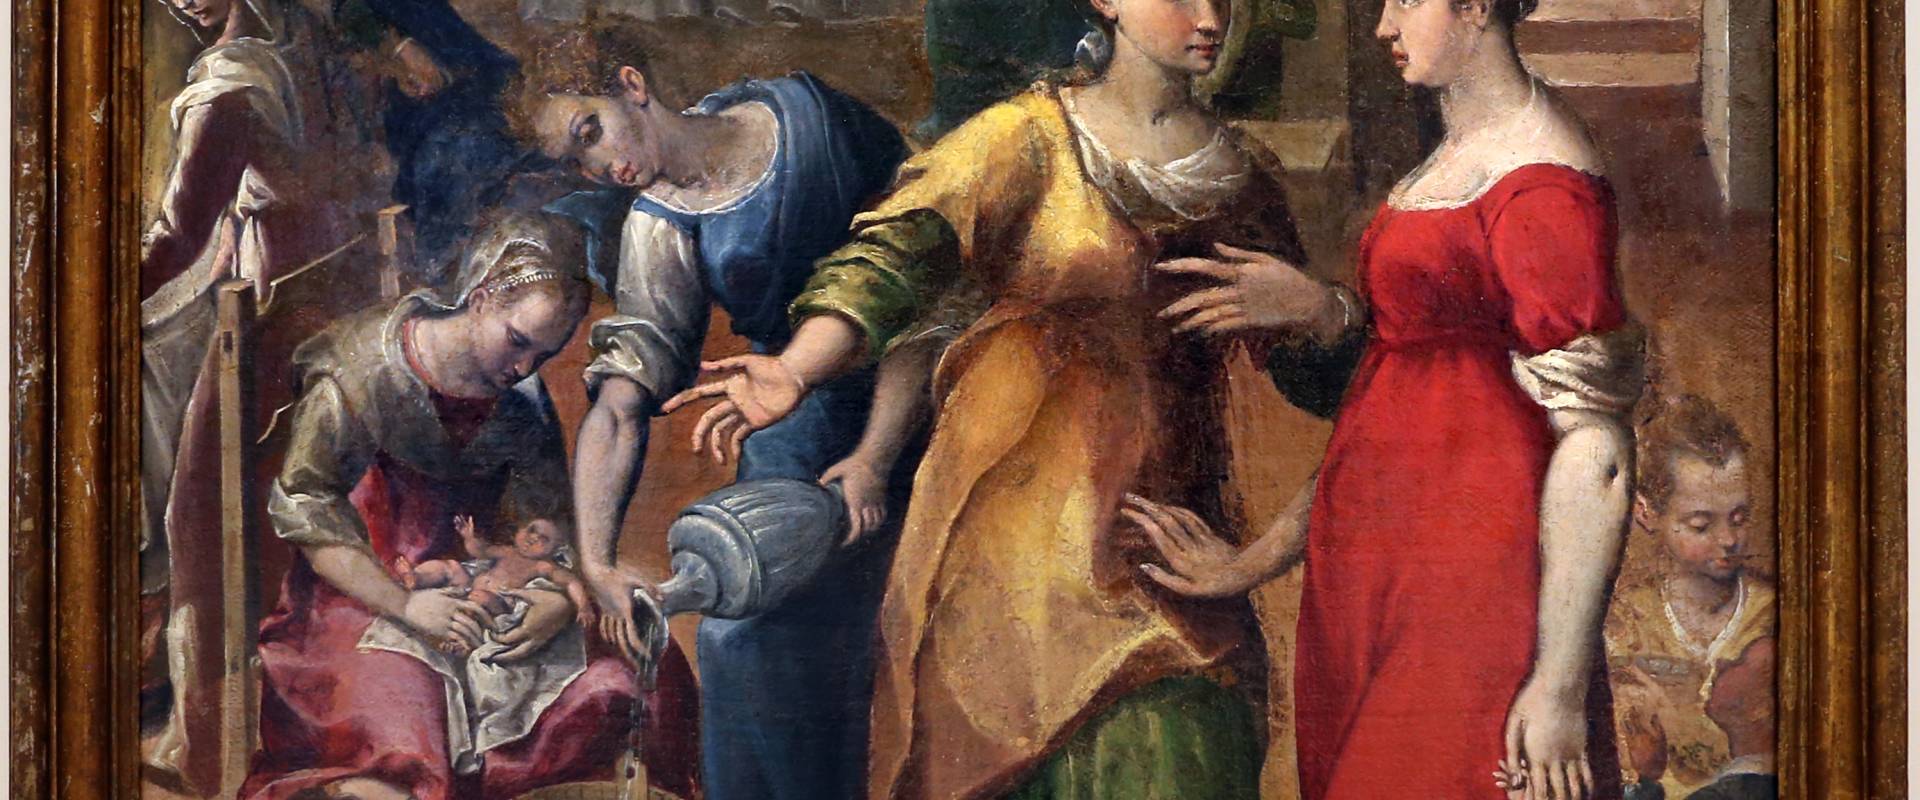 Gian francesco modigliani, natività della vergine, 1590-1600 ca. 01 foto di Sailko